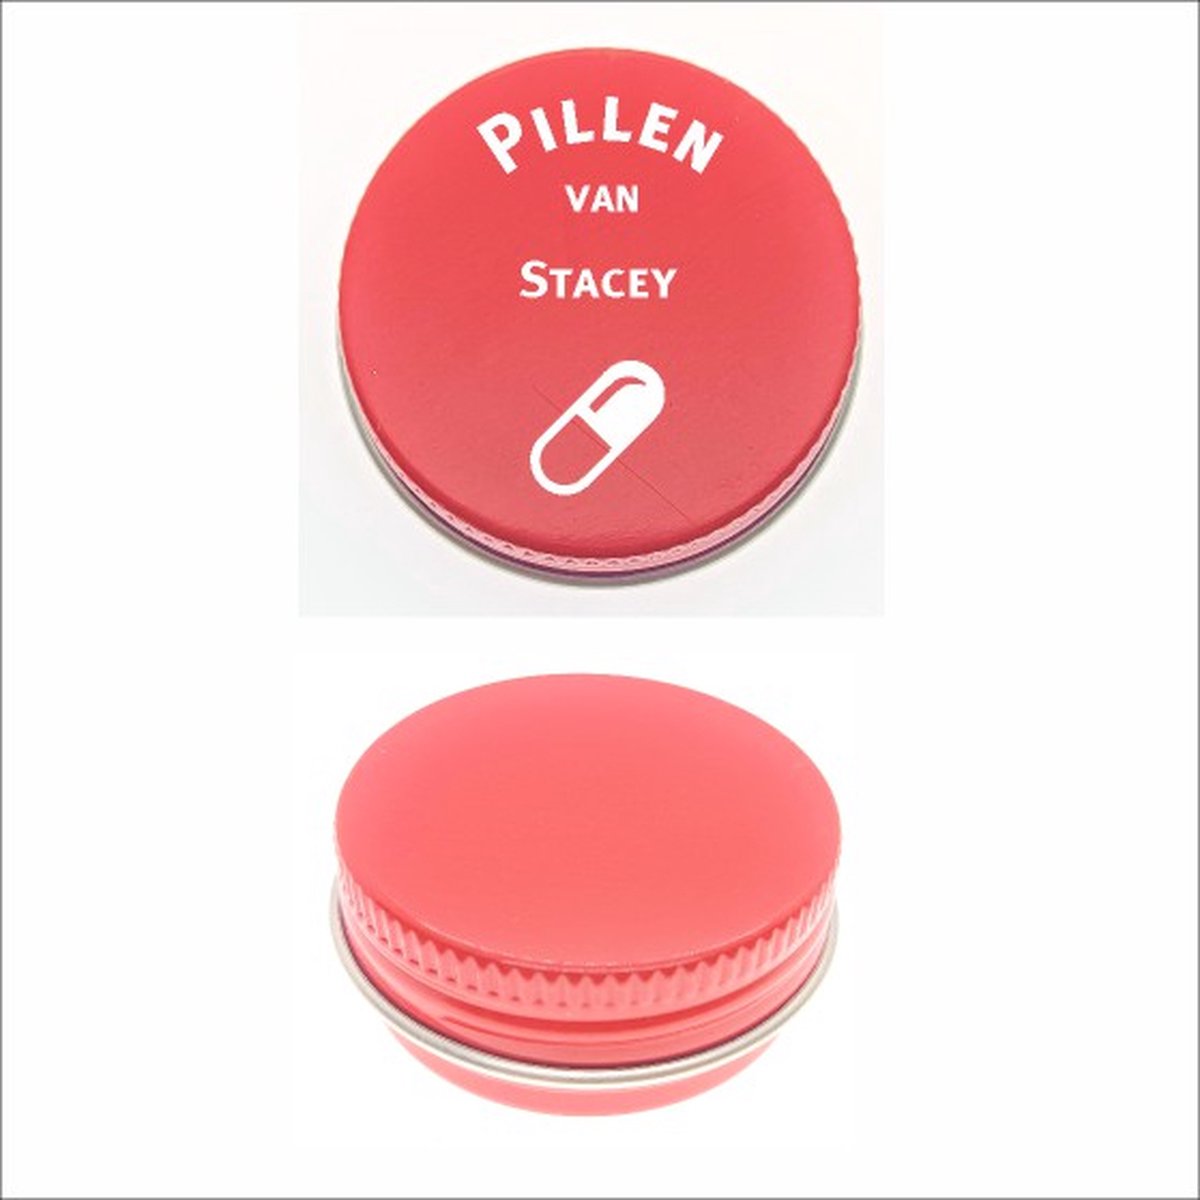 Pillen Blikje Met Naam Gravering - Stacey